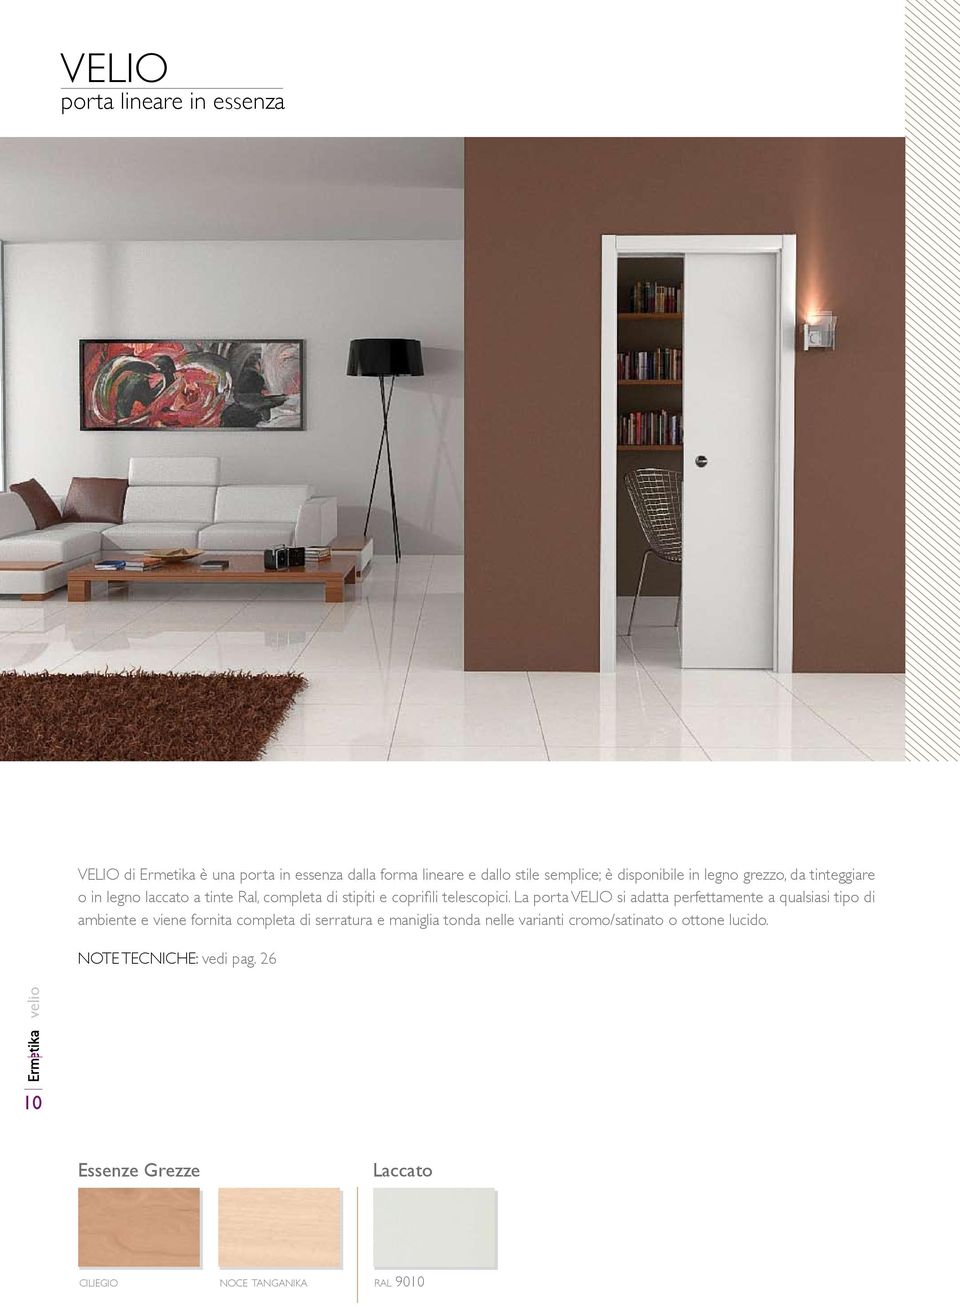 La porta VELIO si adatta perfettamente a qualsiasi tipo di ambiente e viene fornita completa di serratura e maniglia tonda